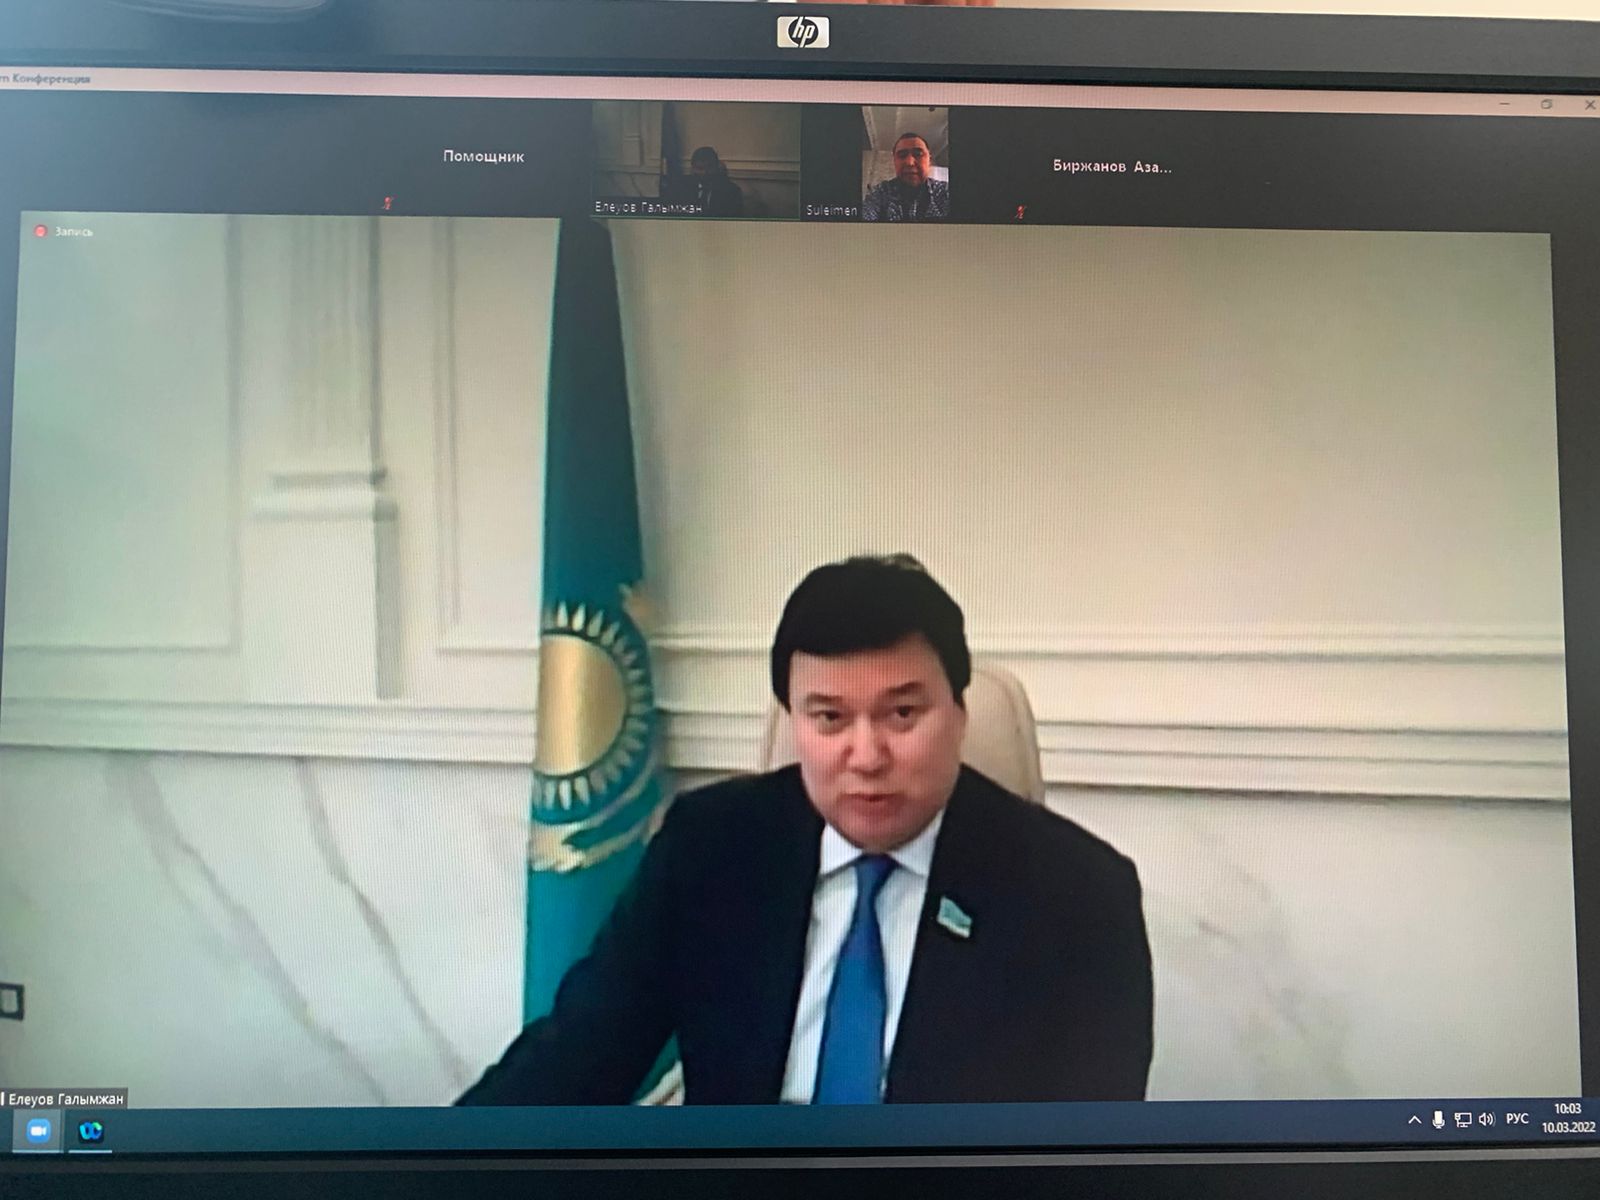 Депутат Мажилиса Парламента Республики Казахстан  Елеуов Г.А.  провел прием граждан.